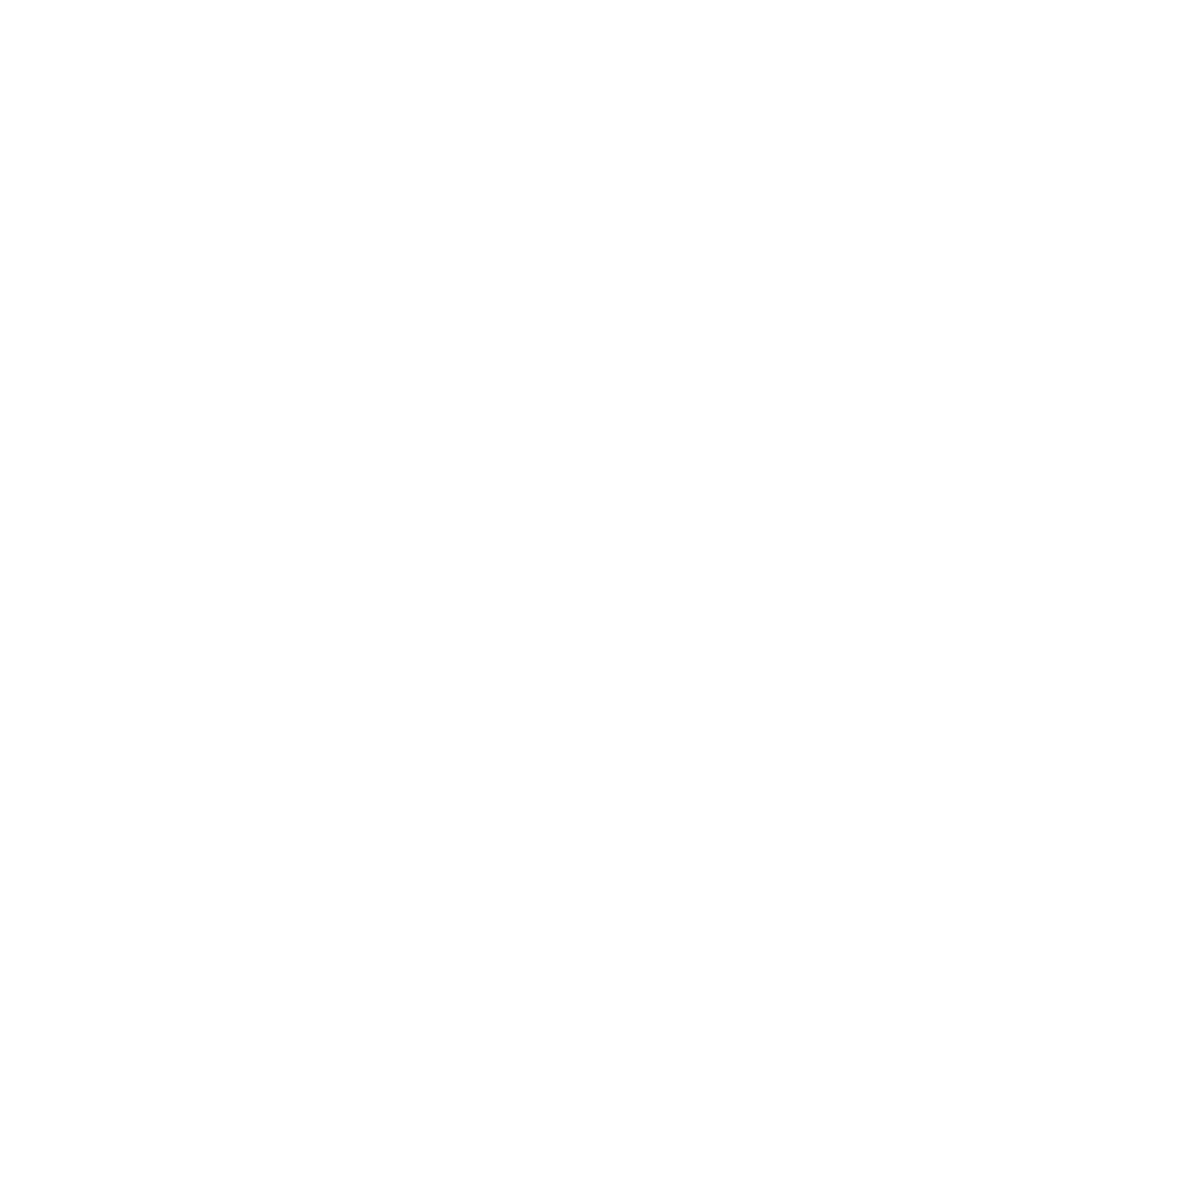 National Debt Awareness Month